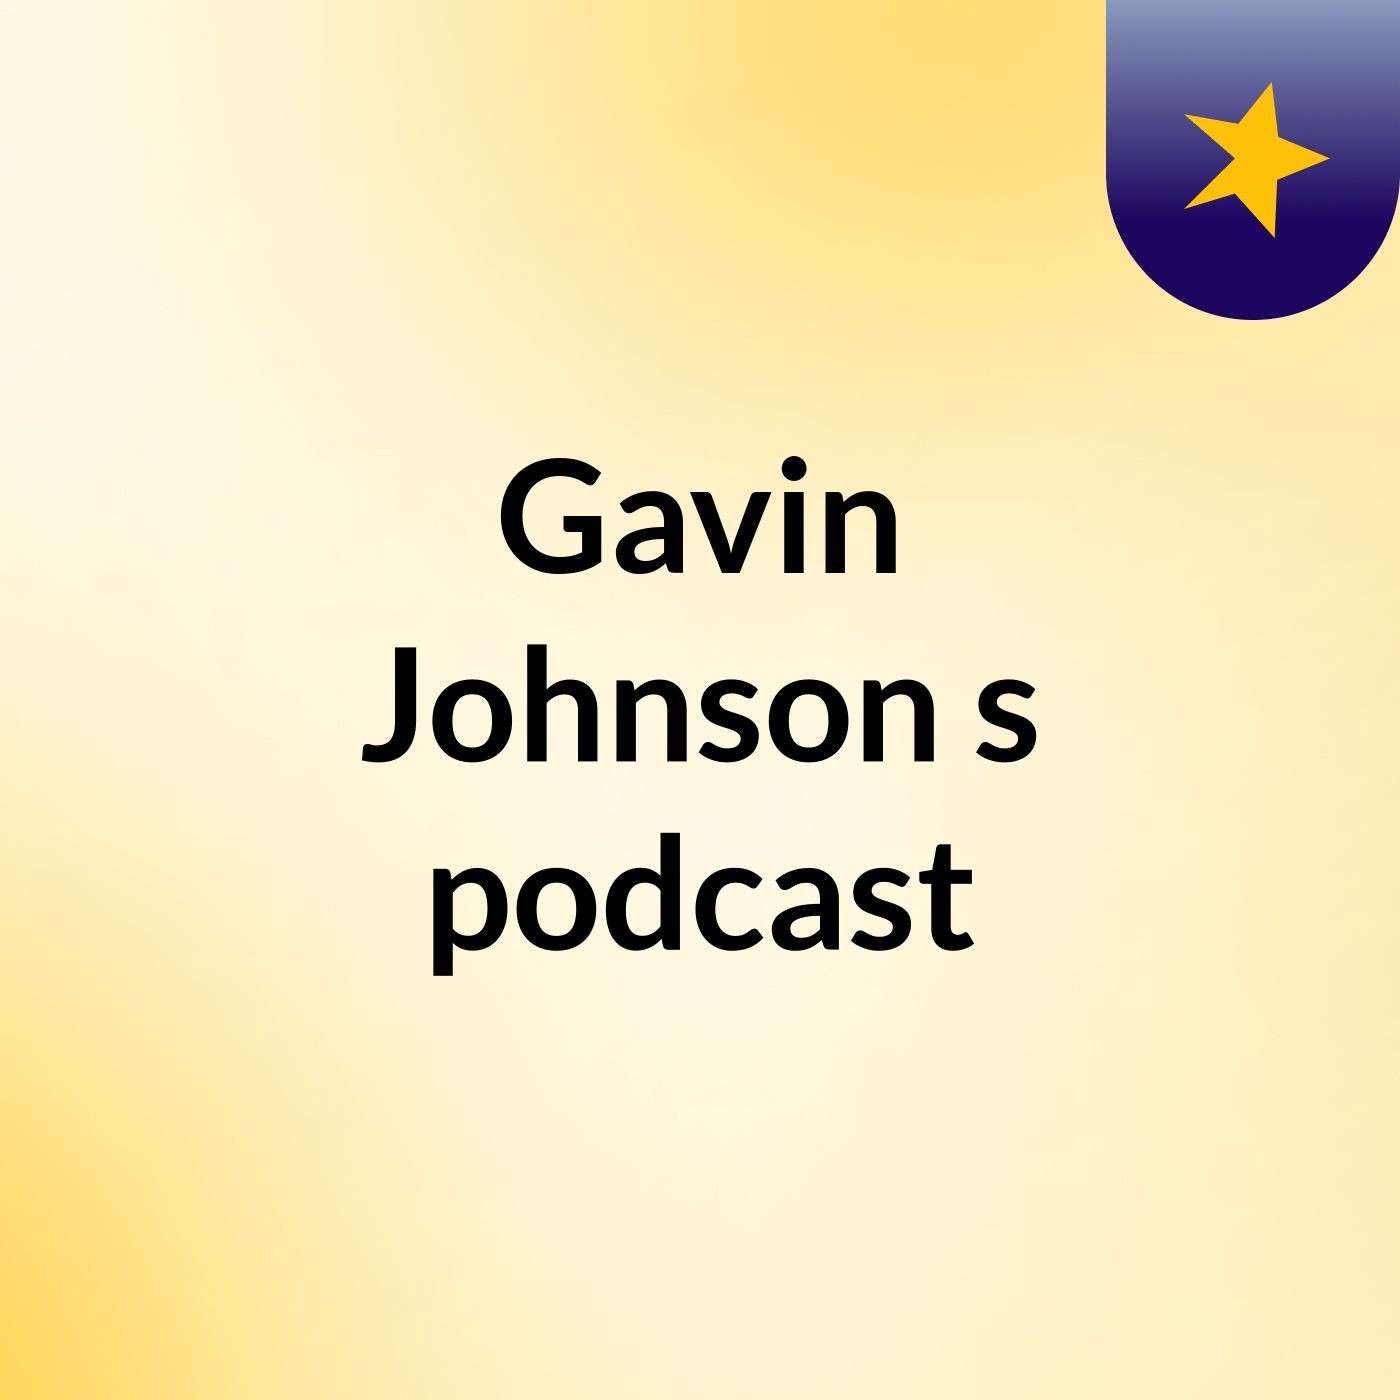 Episode 3 - Gavin Johnson's podcast